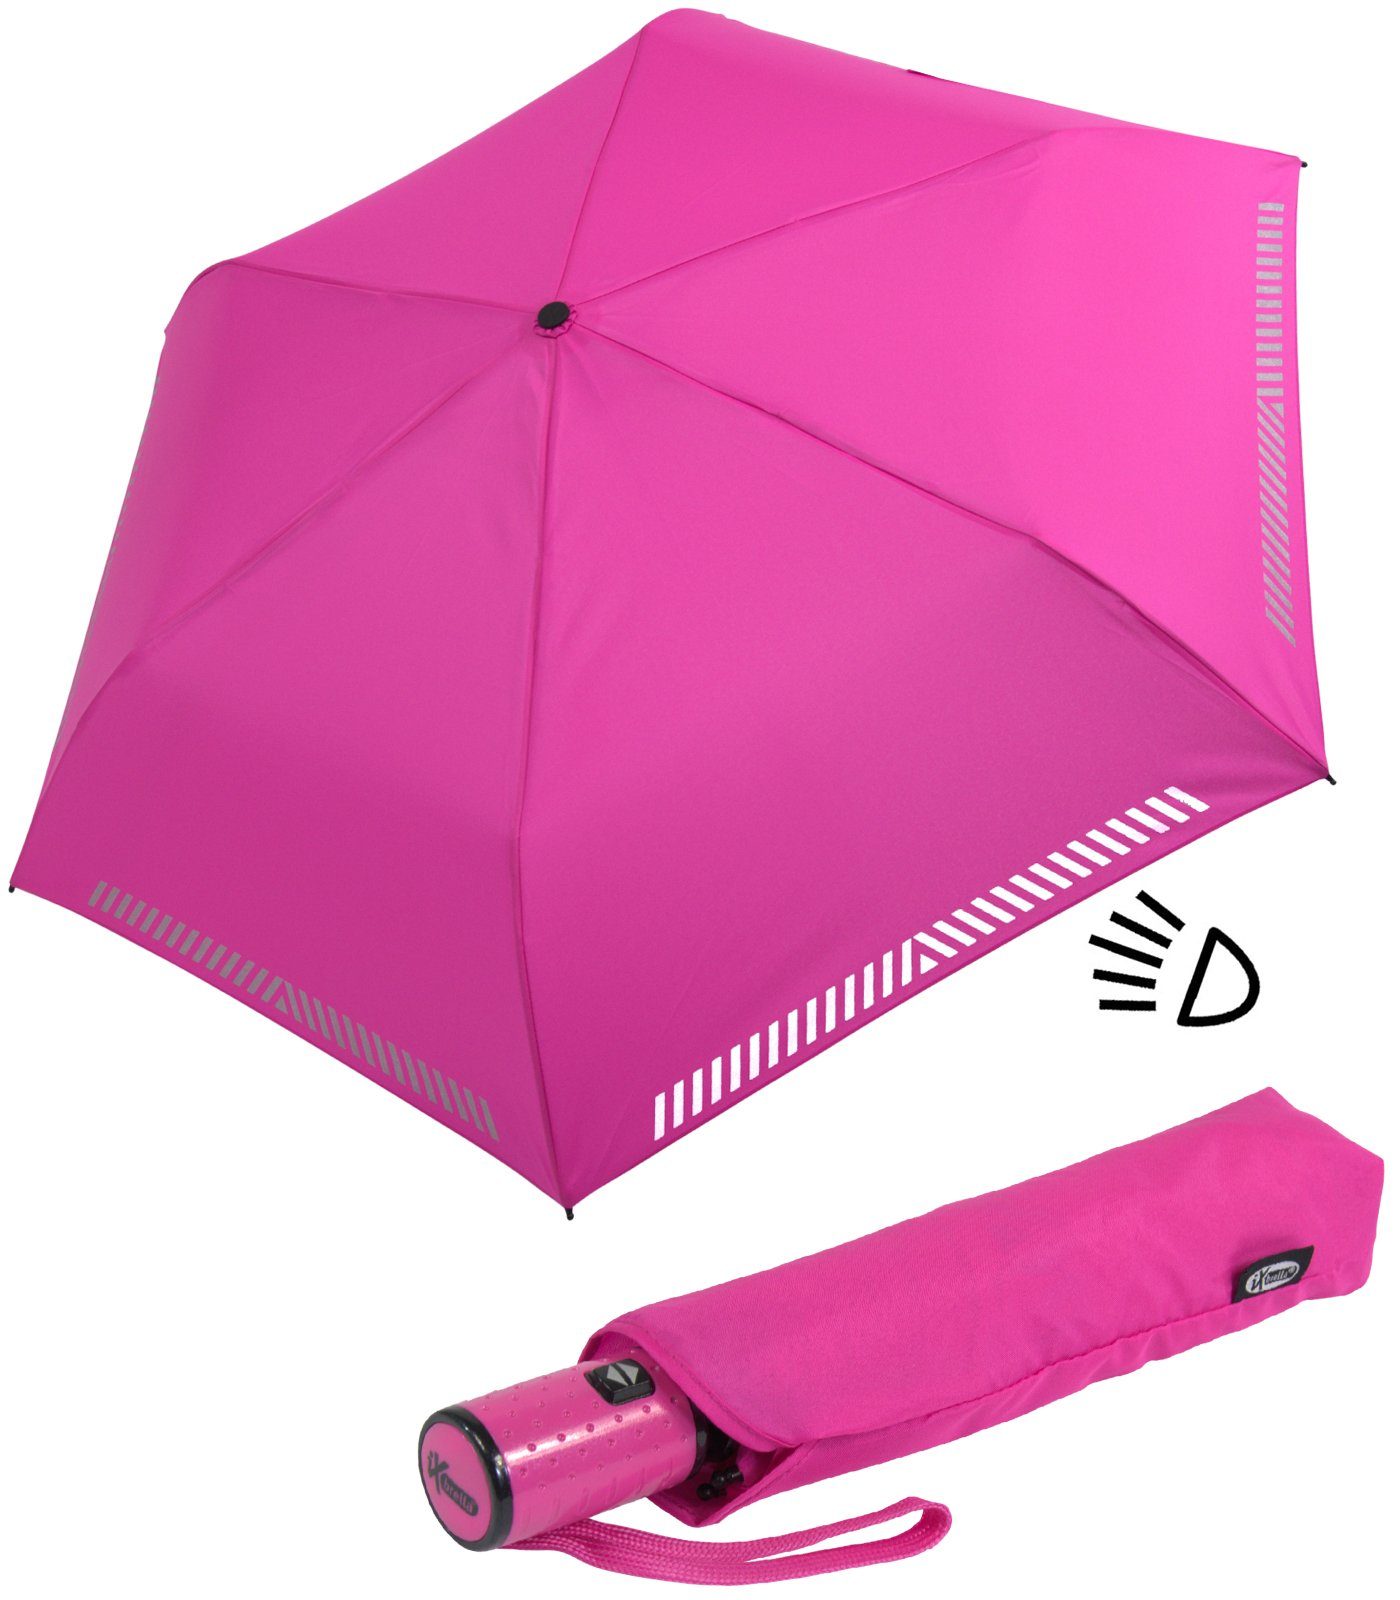 Reflex-Streifen pink reflektierend, neon Sicherheit Taschenregenschirm - Auf-Zu-Automatik, durch Kinderschirm iX-brella mit